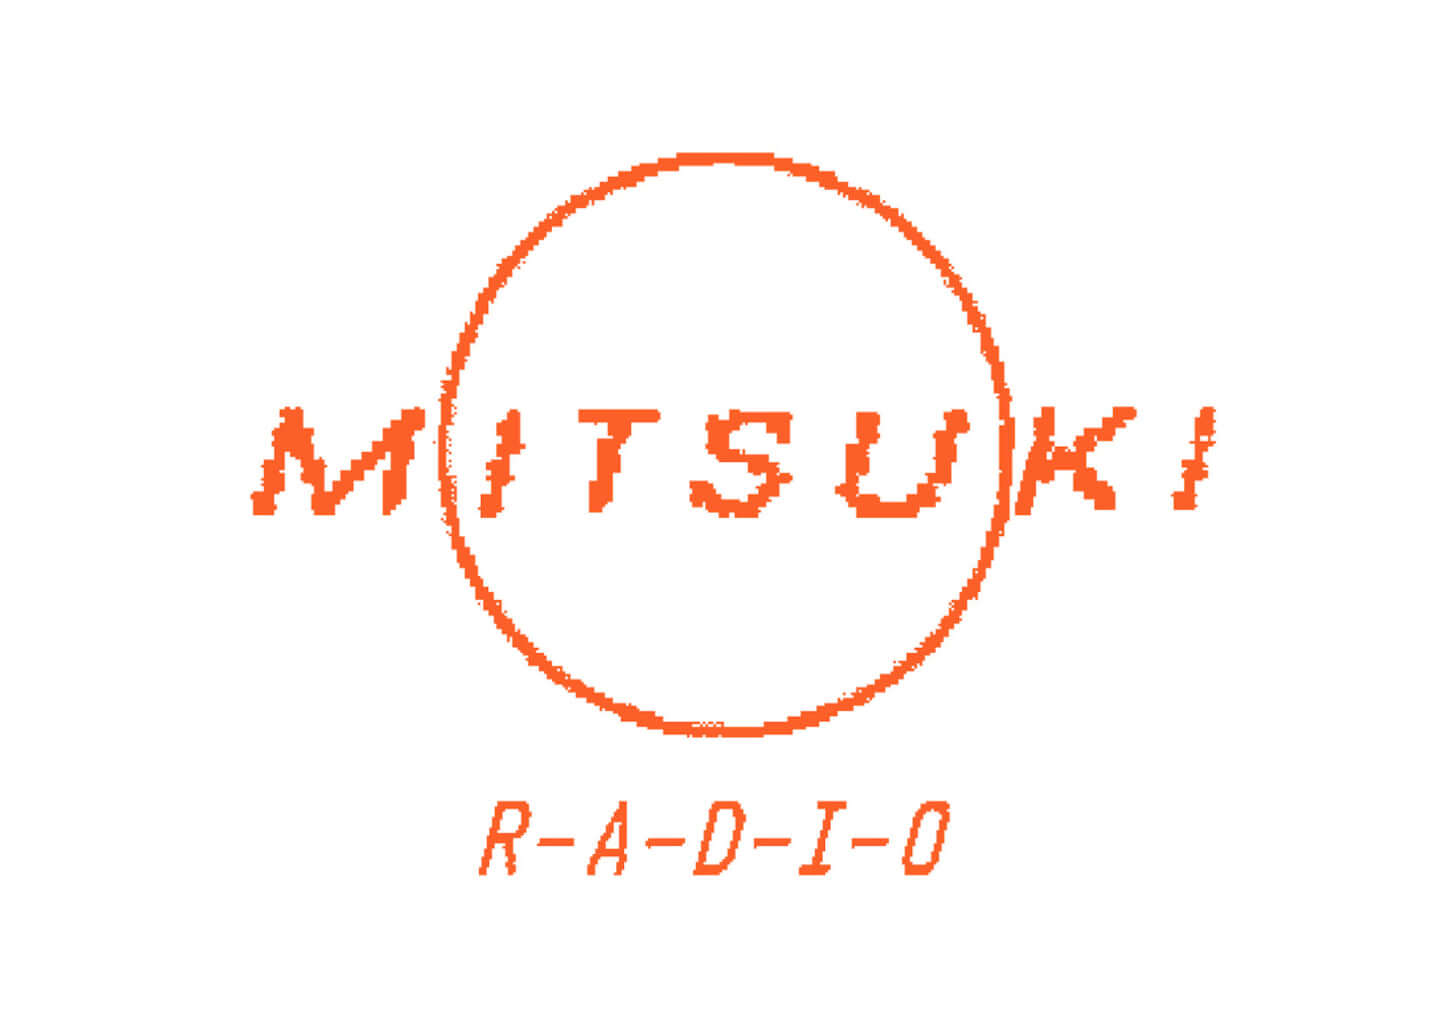 mitsuki radio